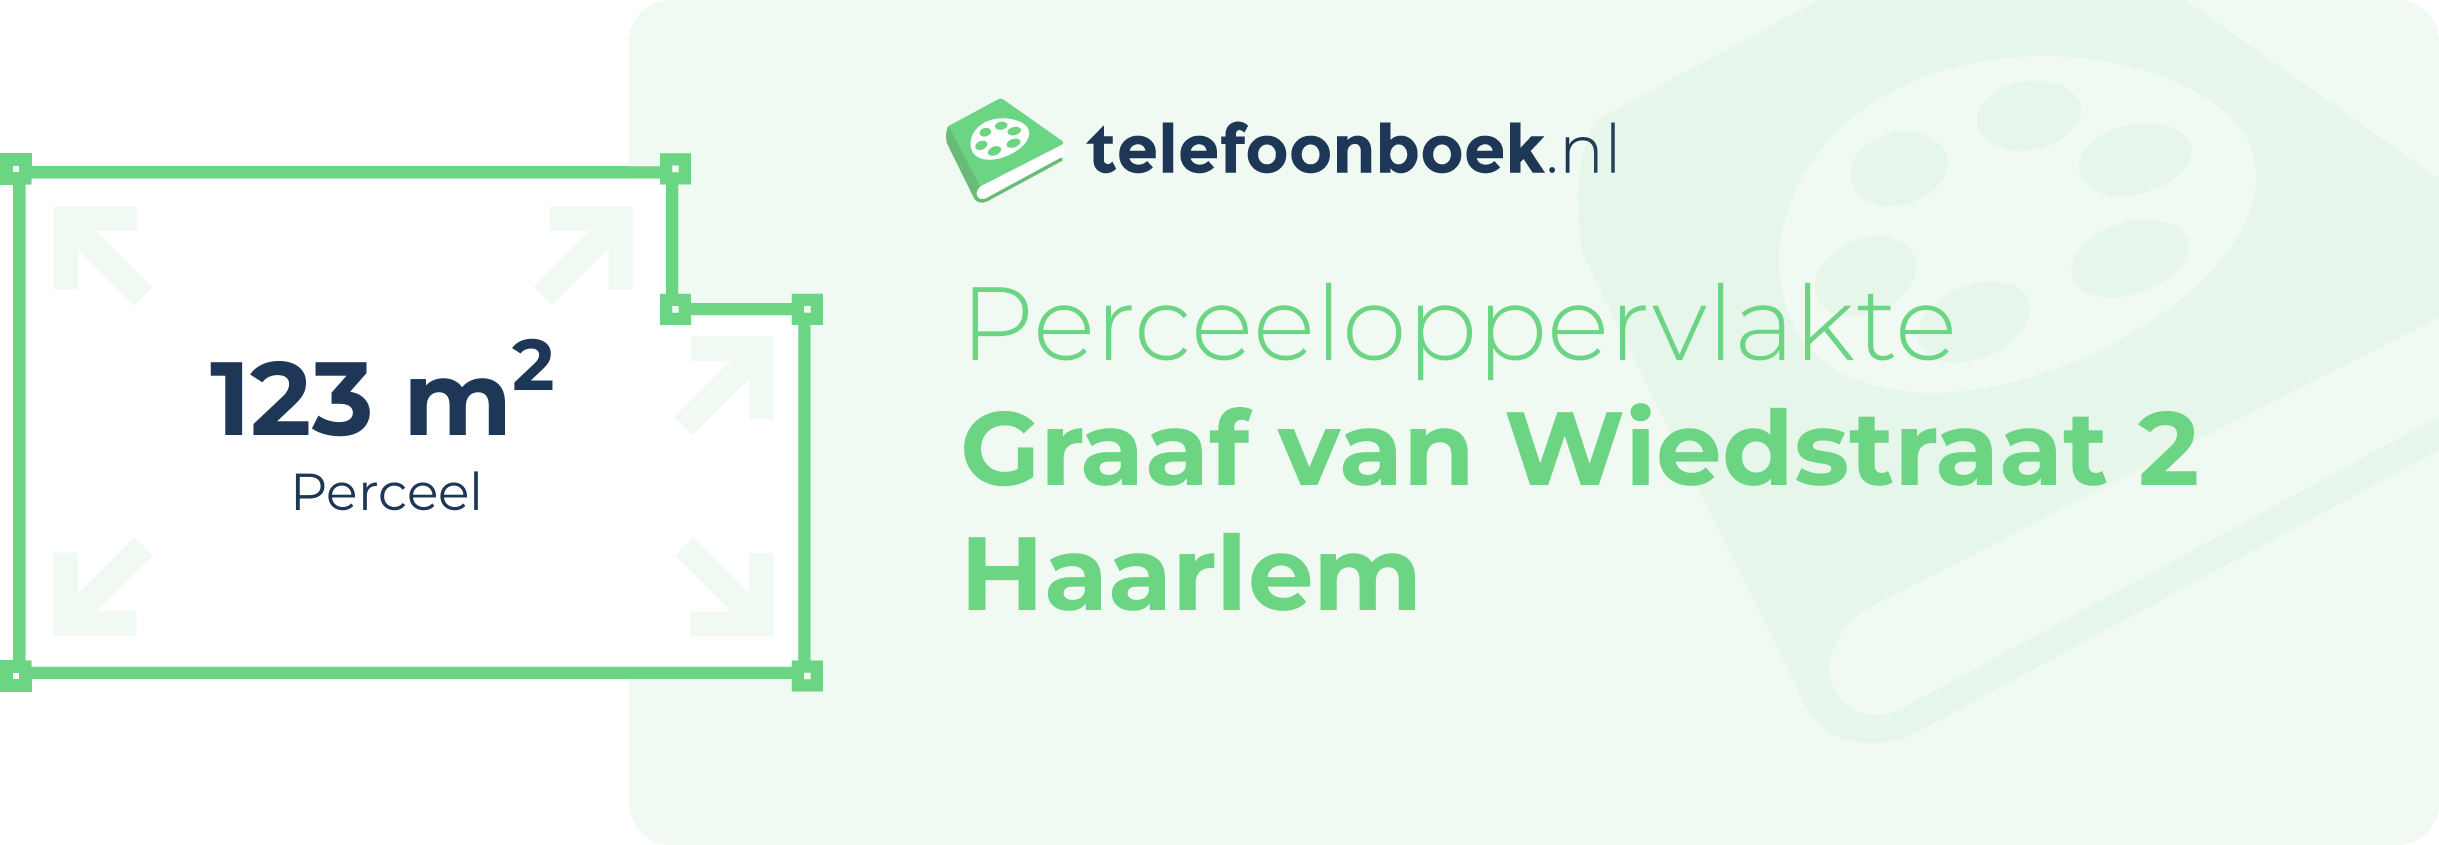 Perceeloppervlakte Graaf Van Wiedstraat 2 Haarlem